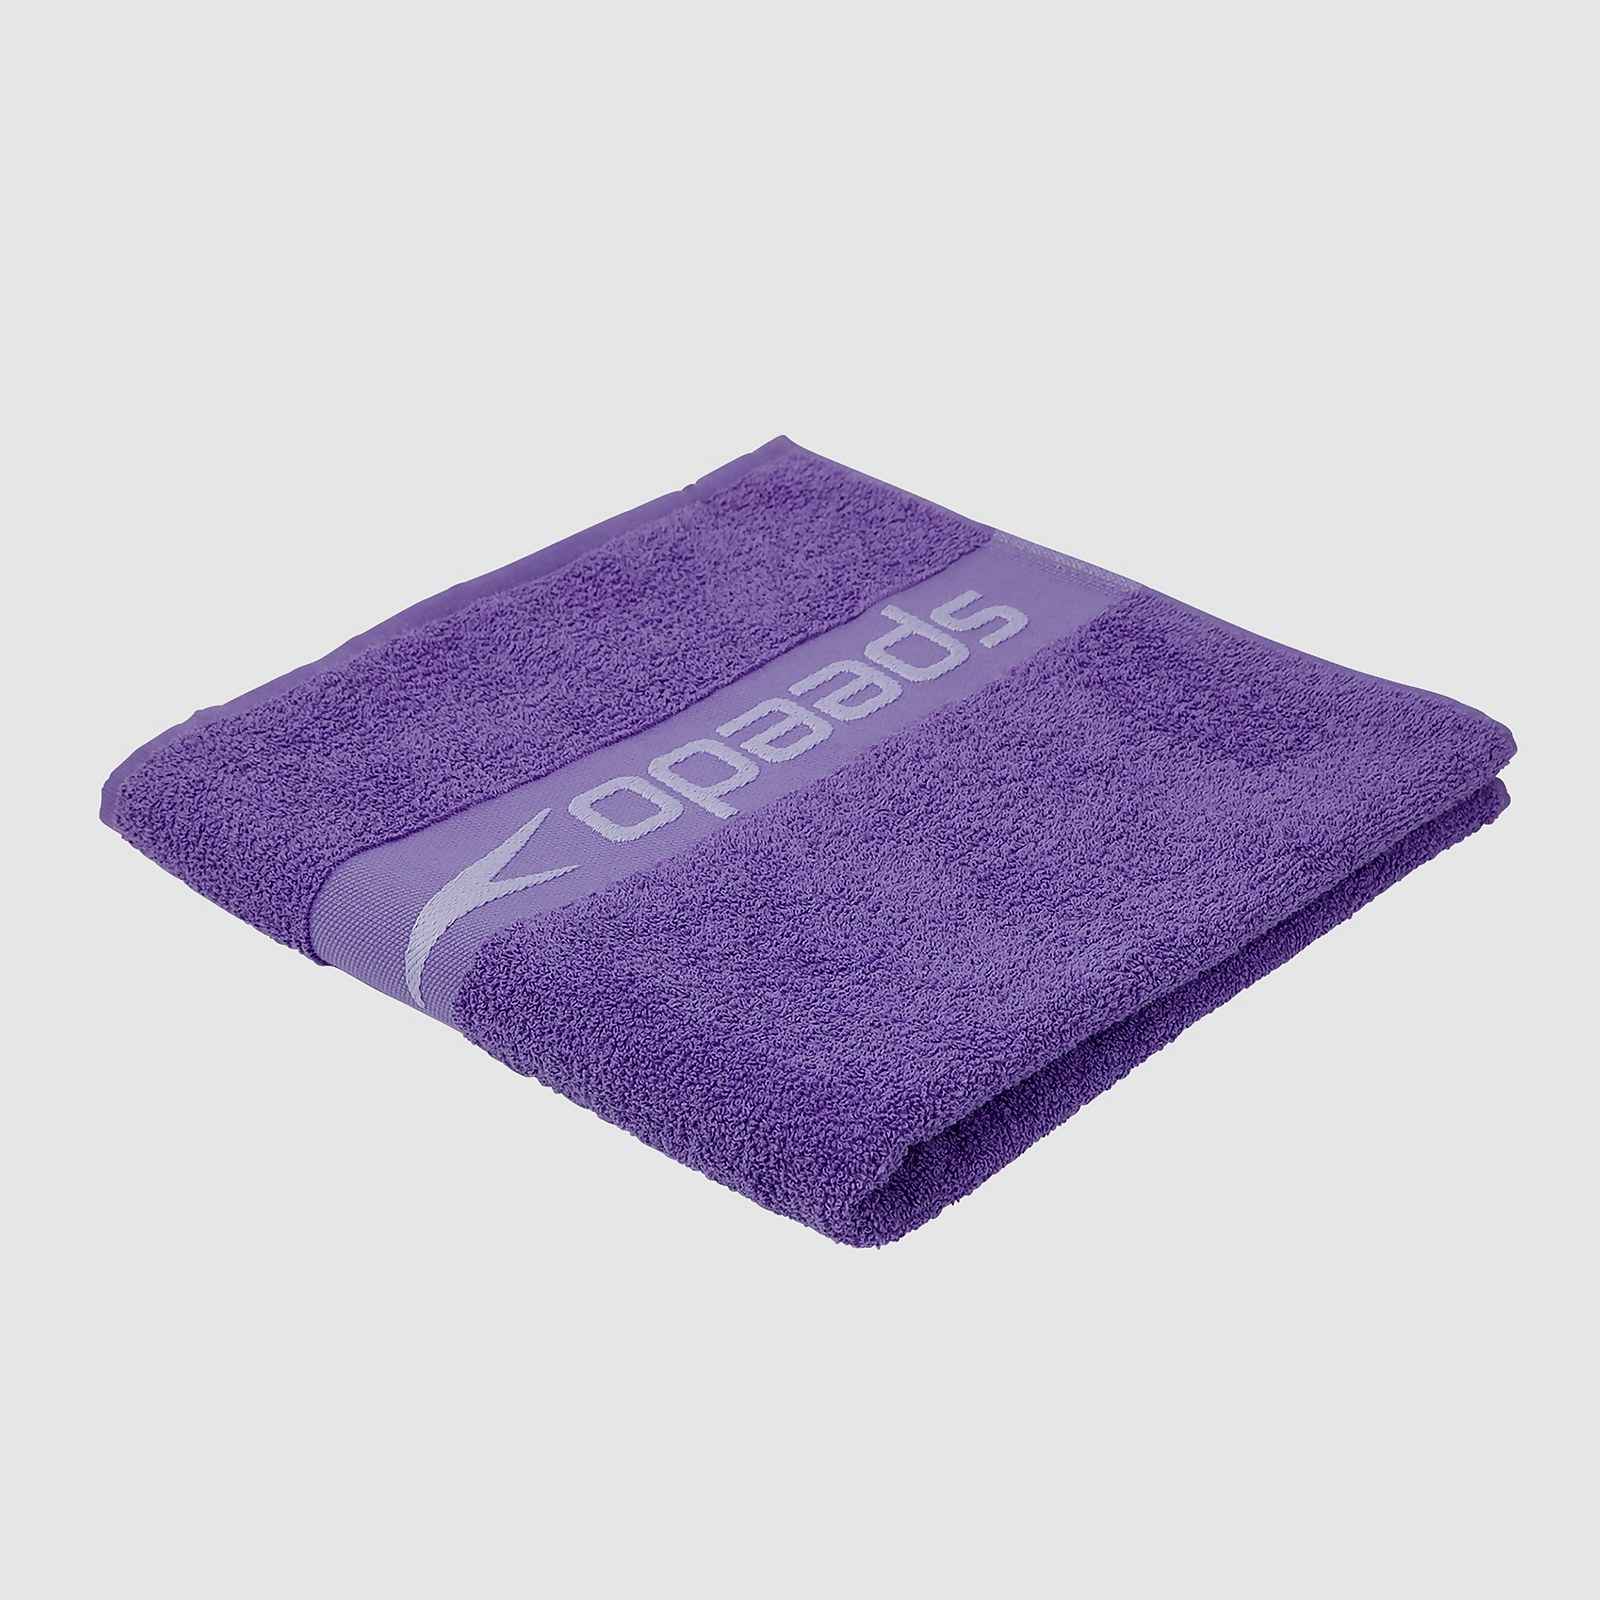 Speedo Border Towel - One Size